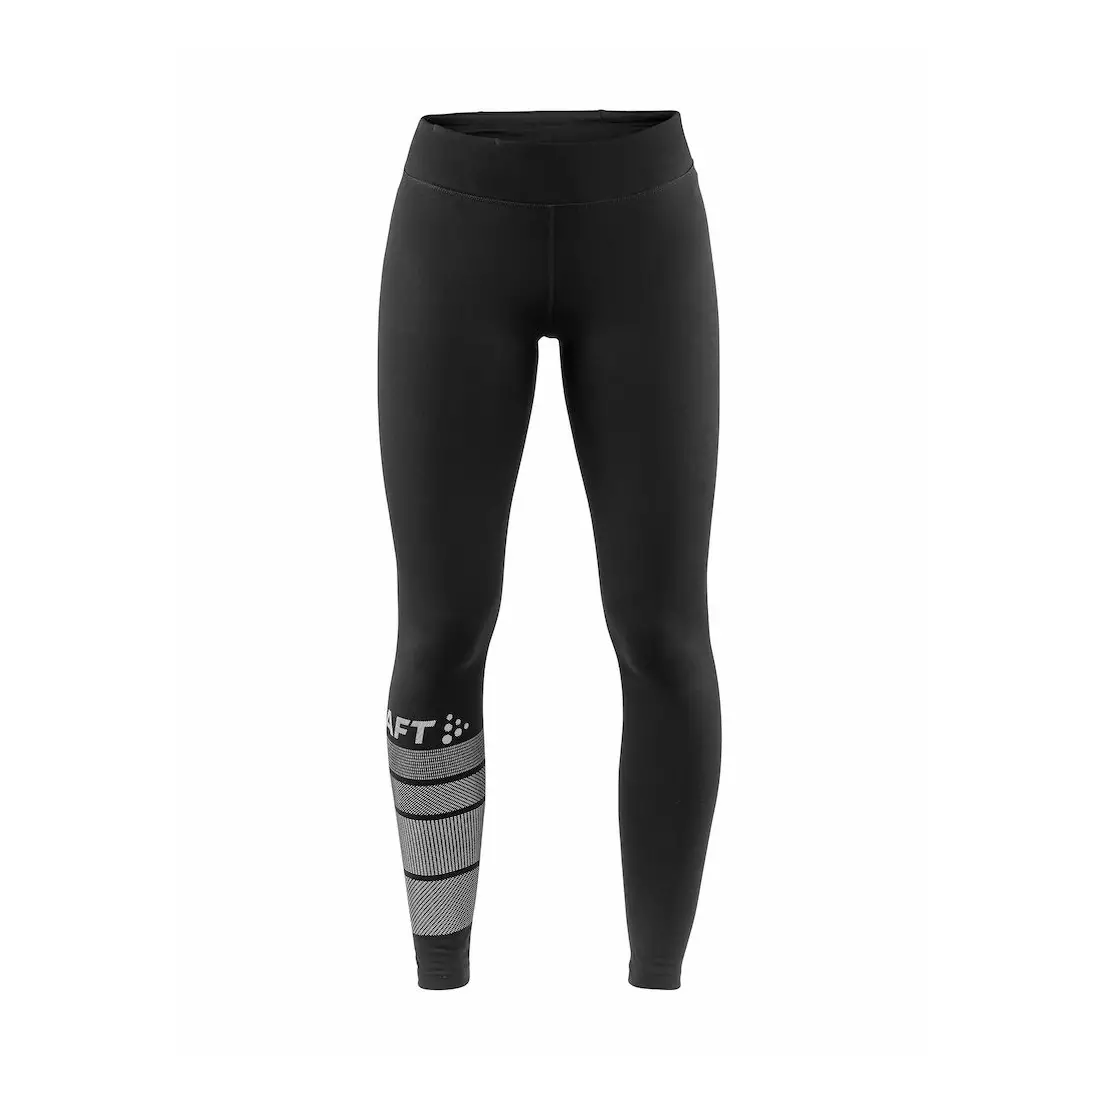 Teplé běžecké kalhoty CRAFT WARM, dámské, černé, 1906416-999926